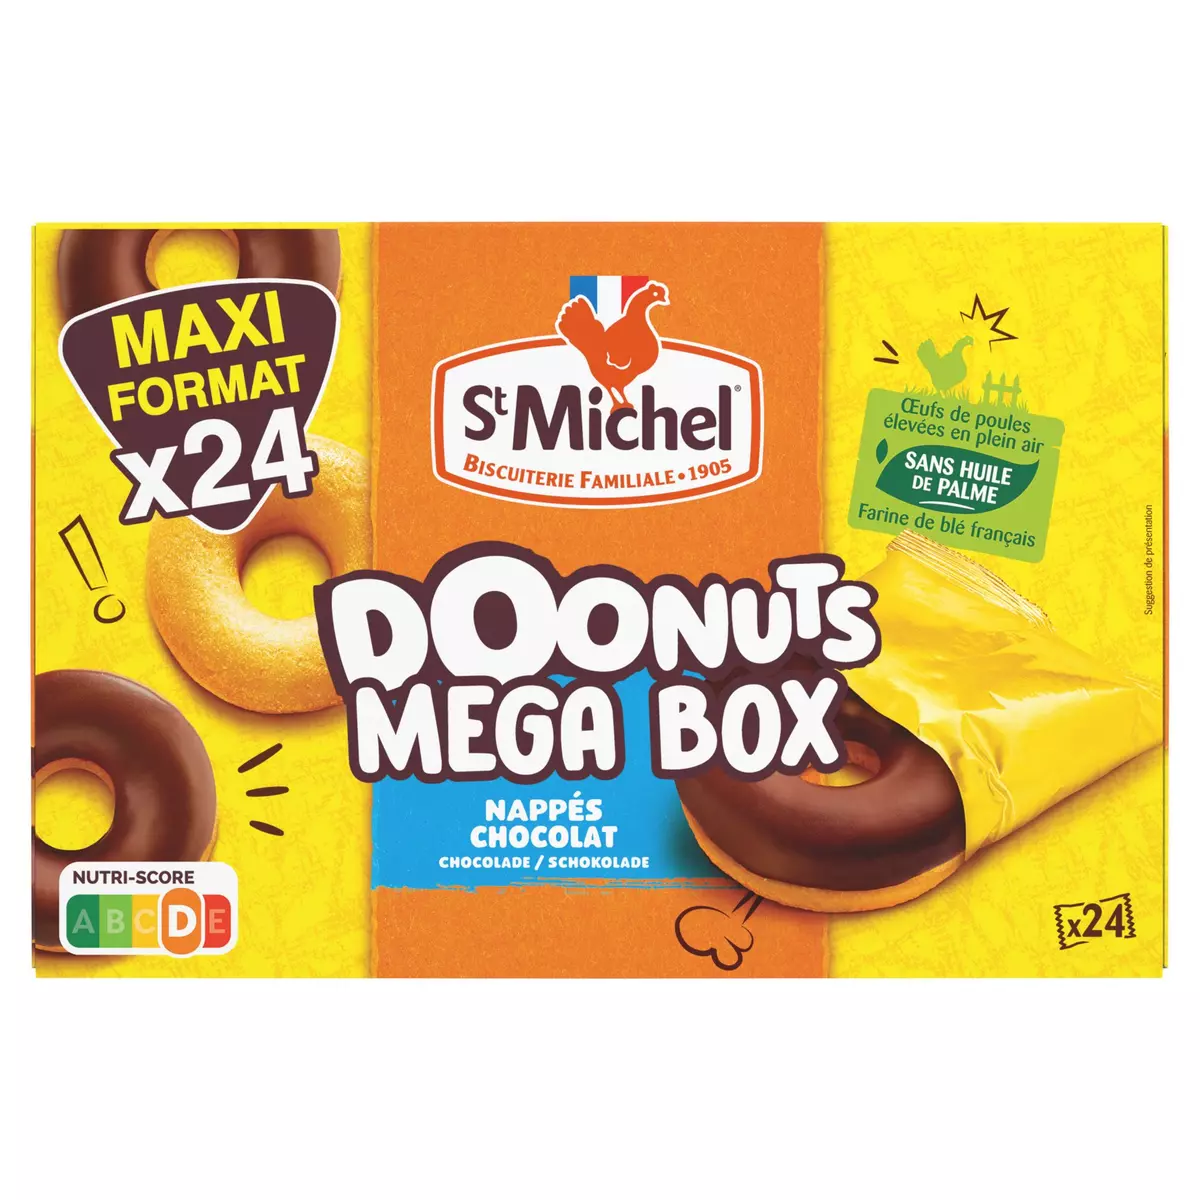 ST MICHEL Doonuts nappés au chocolat sans huile de palme sachets individuels 12 gâteaux 360g